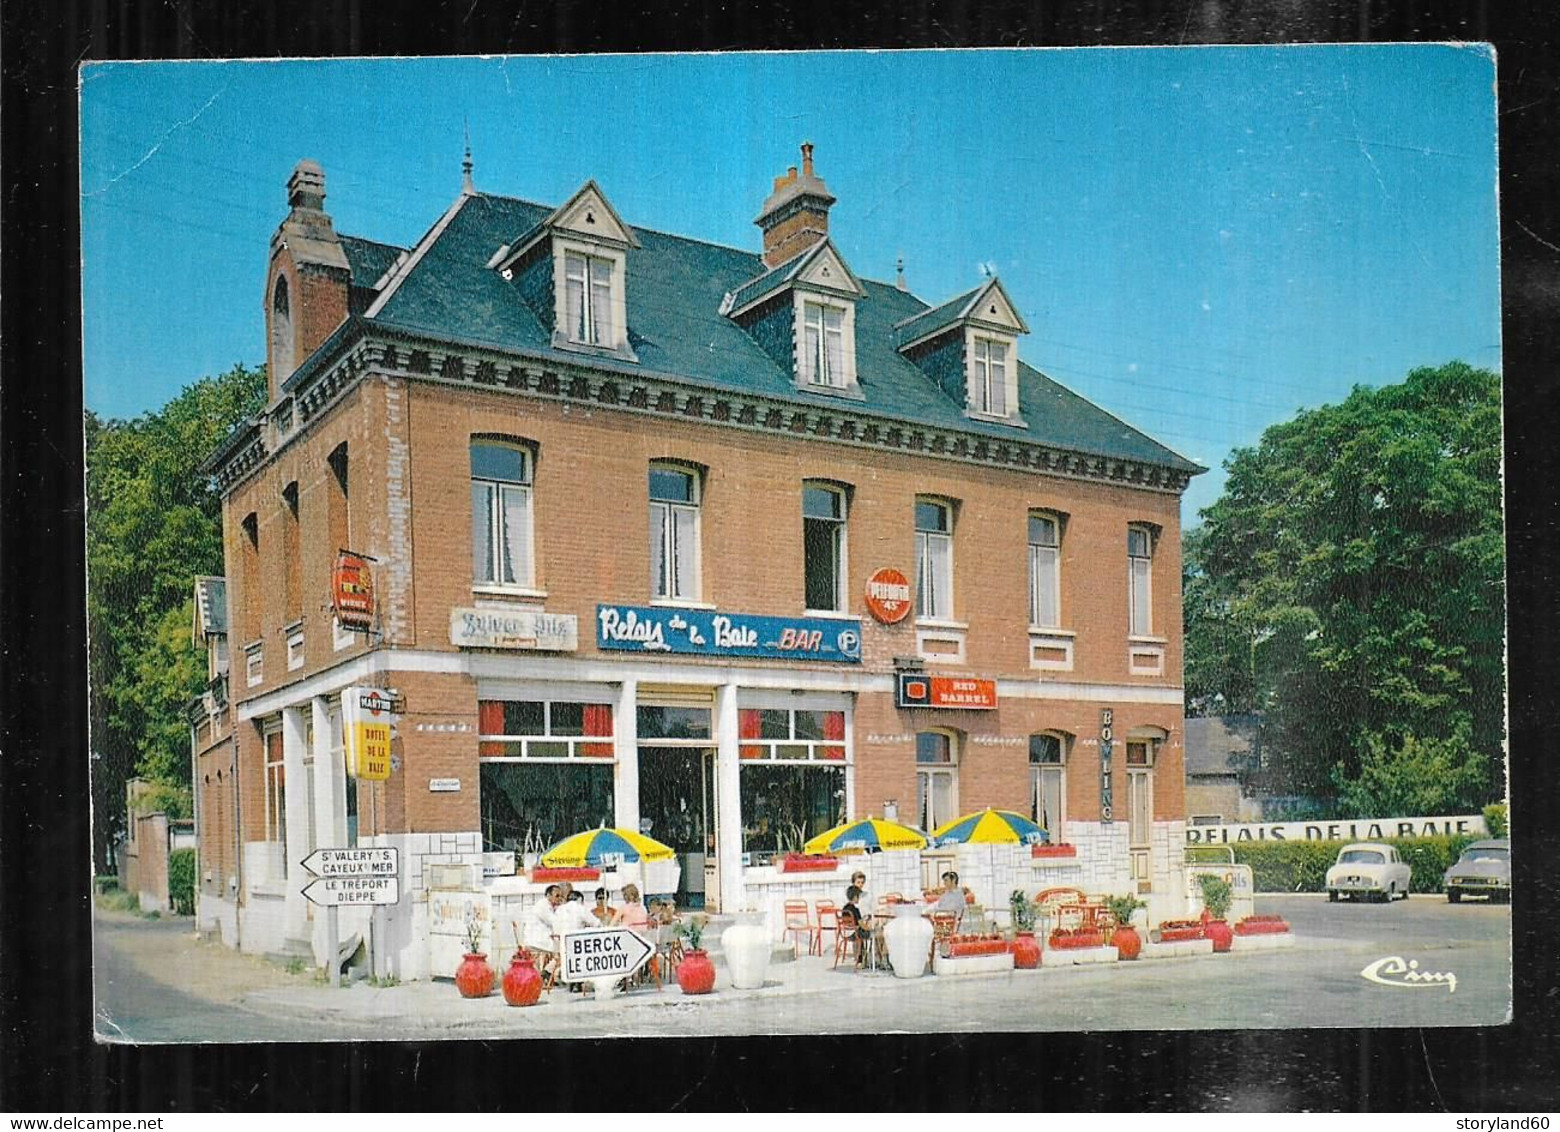 Cpm 8037343 Noyelles Sur Mer Relais De La Baie Hotel Bar Brasserie - Noyelles-sur-Mer